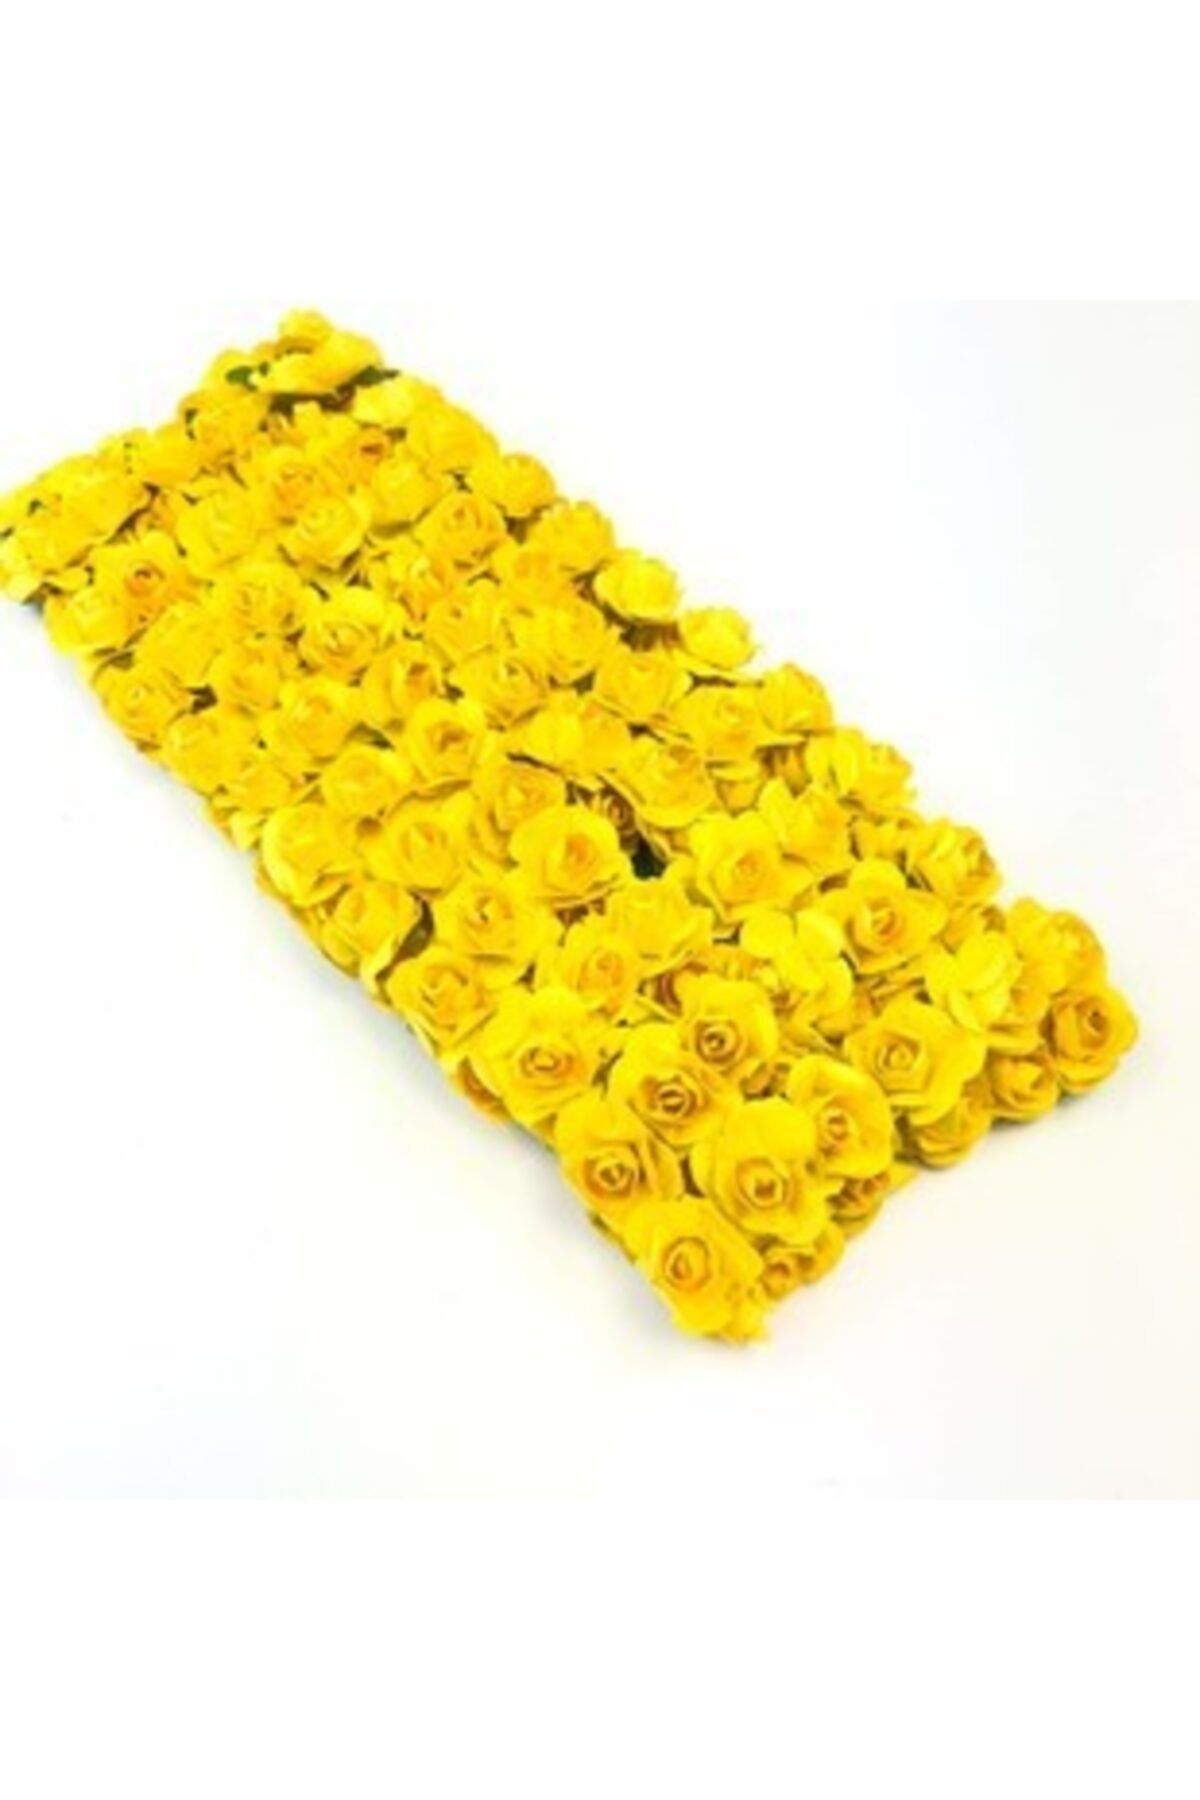 Aker Hediyelik Sarı Kağıt Gül 144 Adet Sarı Yapay Çiçek 120 Taneden Fazla Kağıt Güller